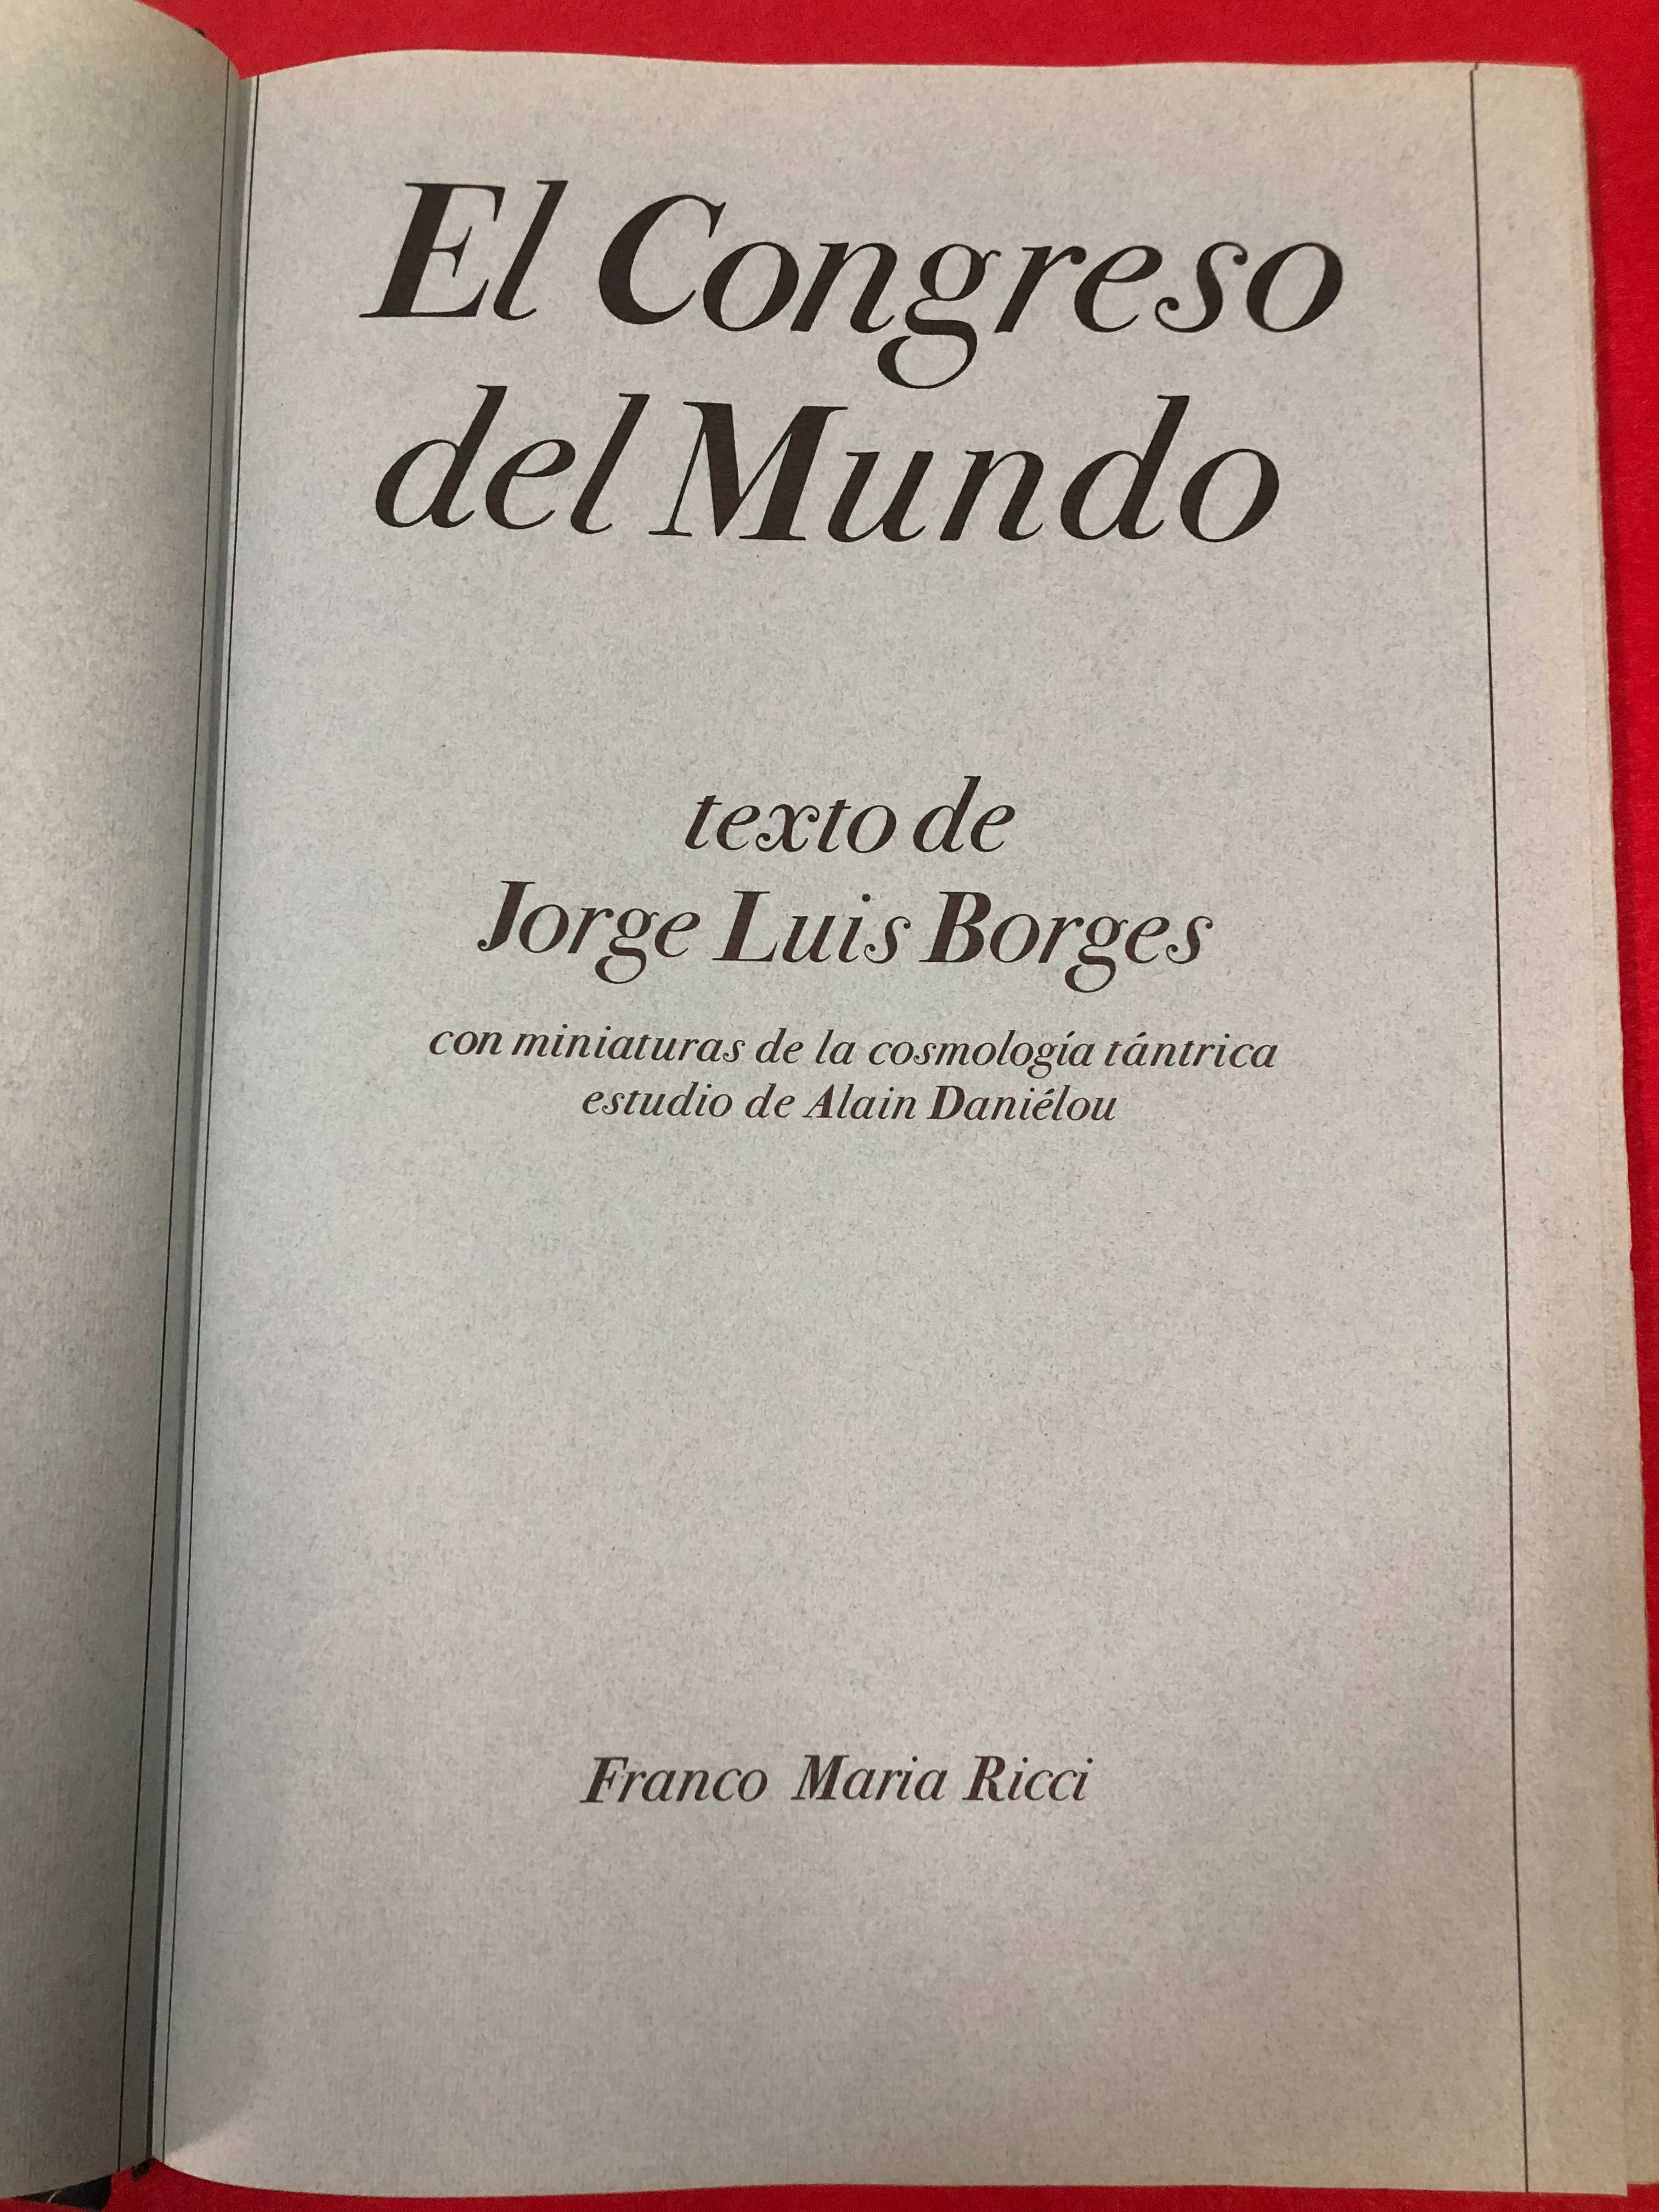 El congresso del mundo -  Jorge Luis Borges - Franco Maria Ricci